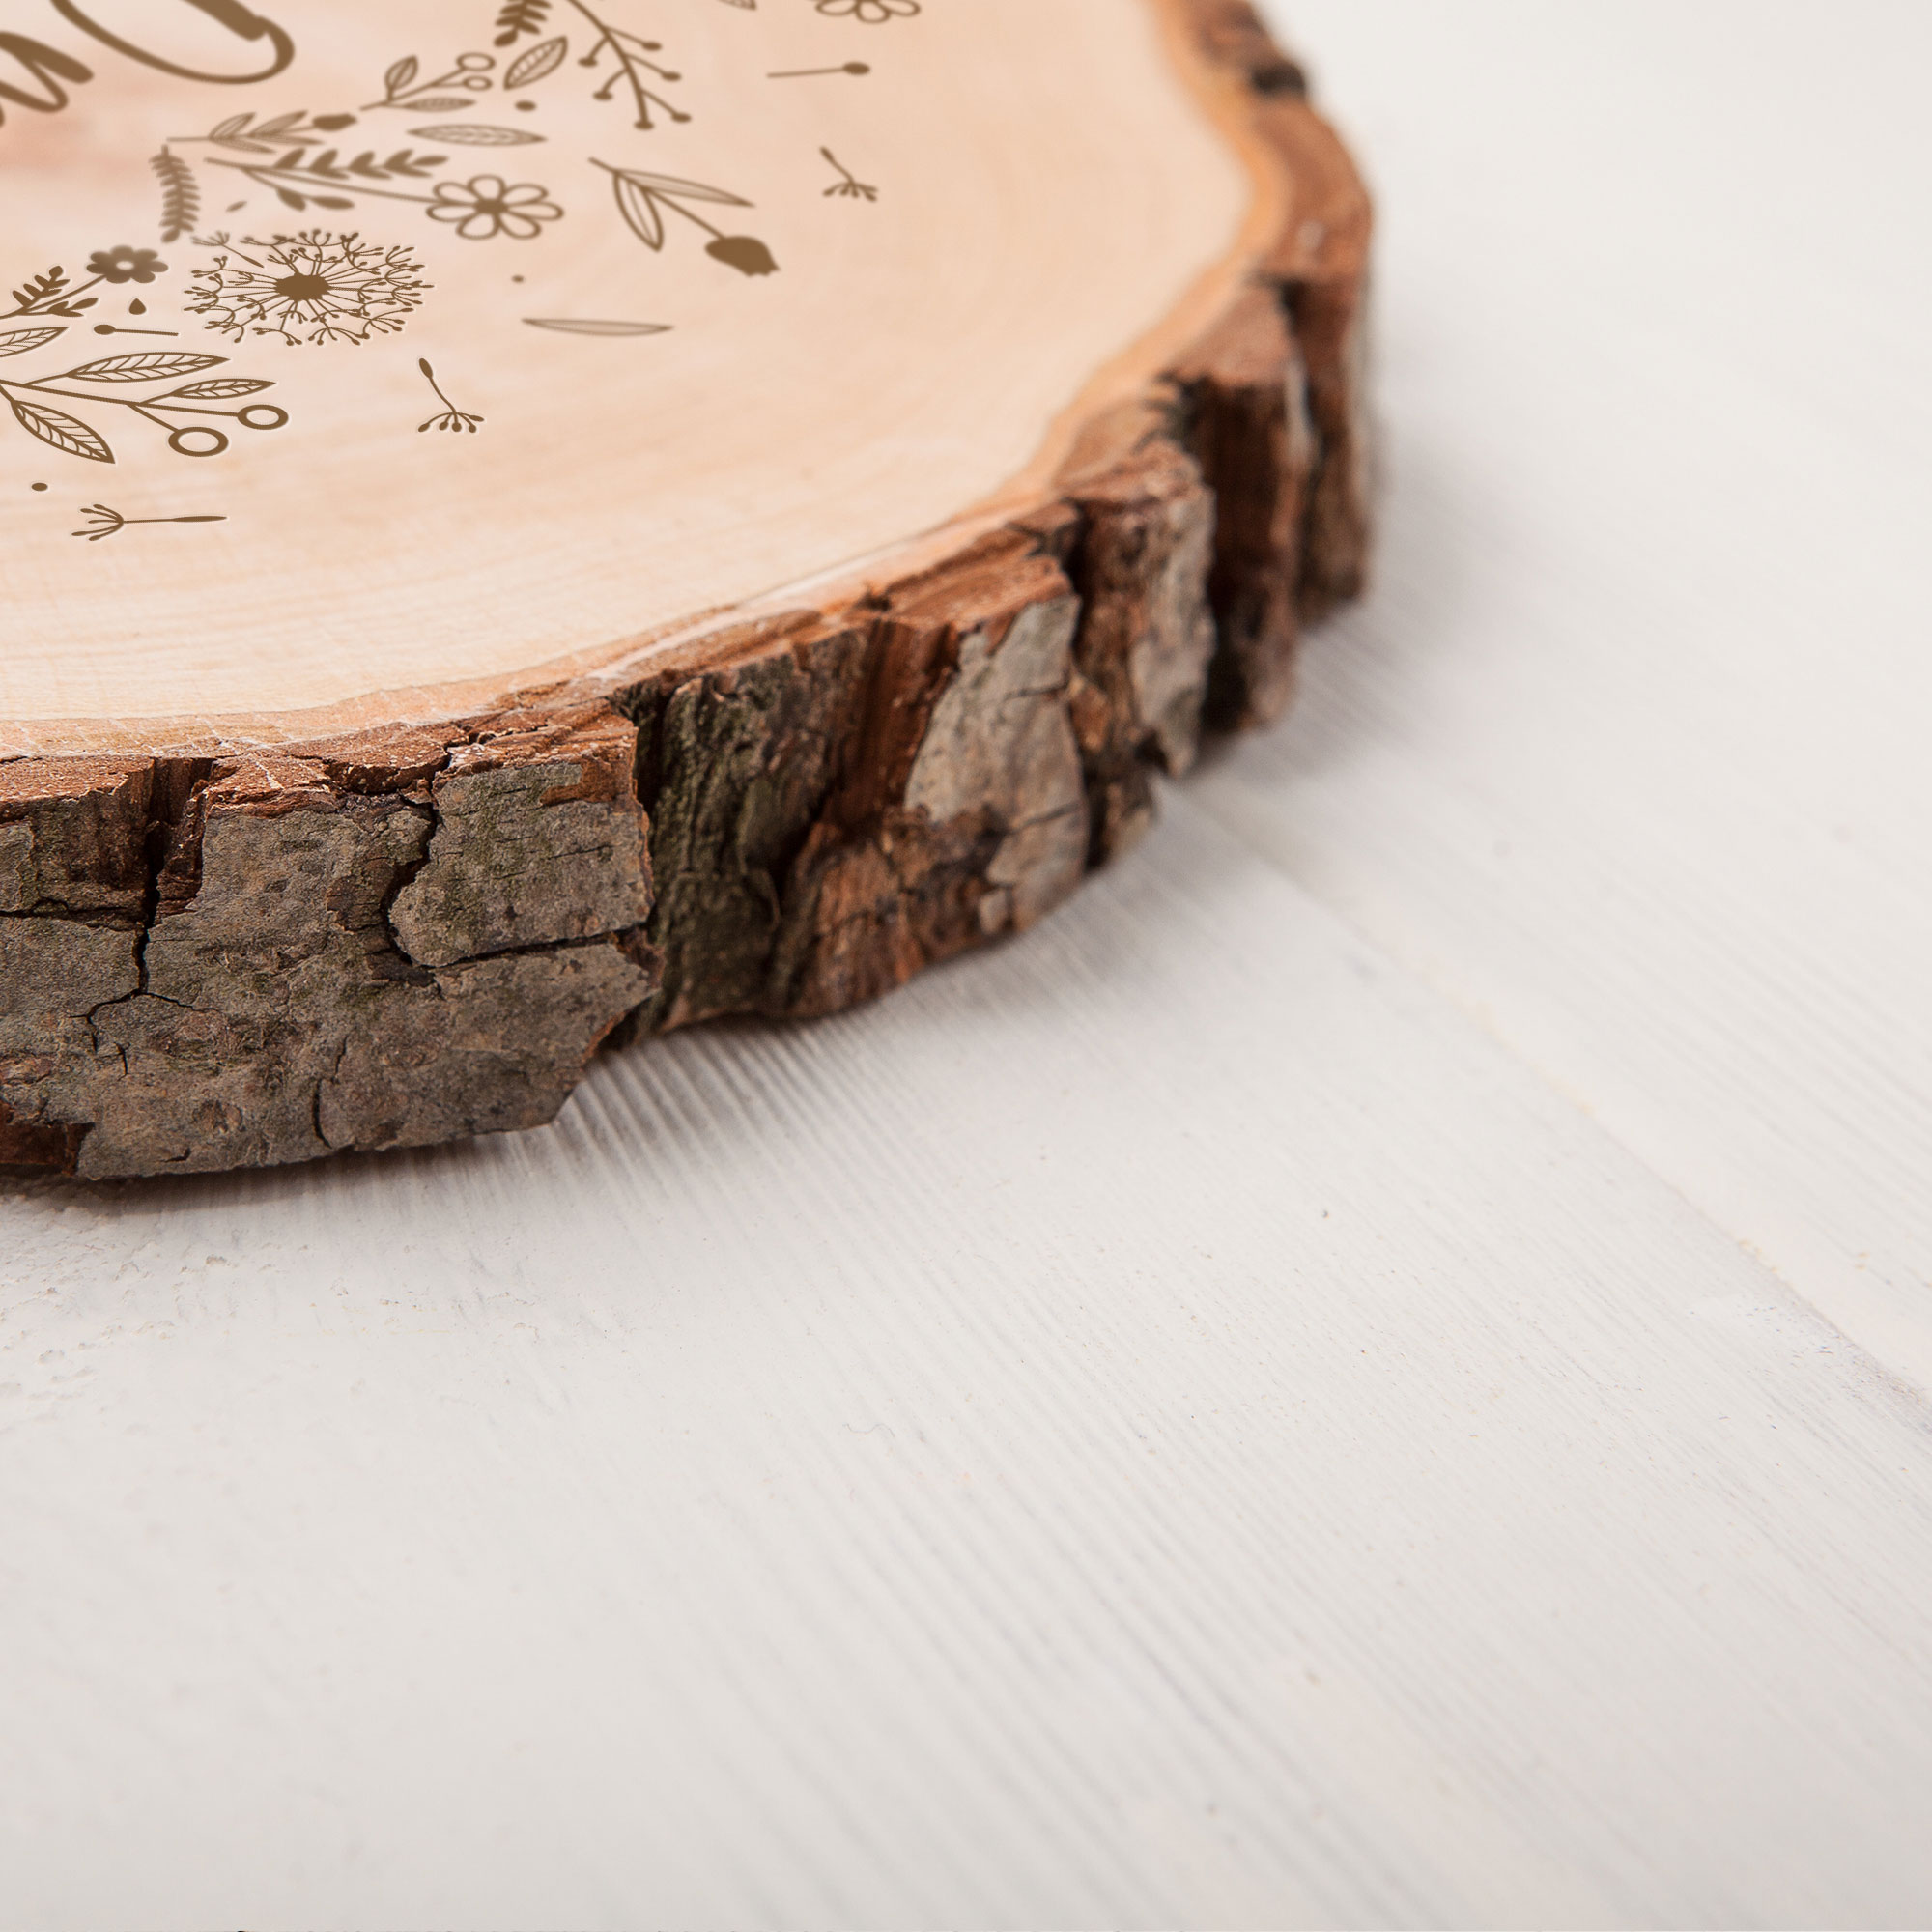 Holz Dekoscheibe mit Gravur für Oma, Rindenscheibe als Geschenkidee für Oma, Rundscheibe mit Blumenherz Motiv, Natürliche Astscheibe mit Rinde